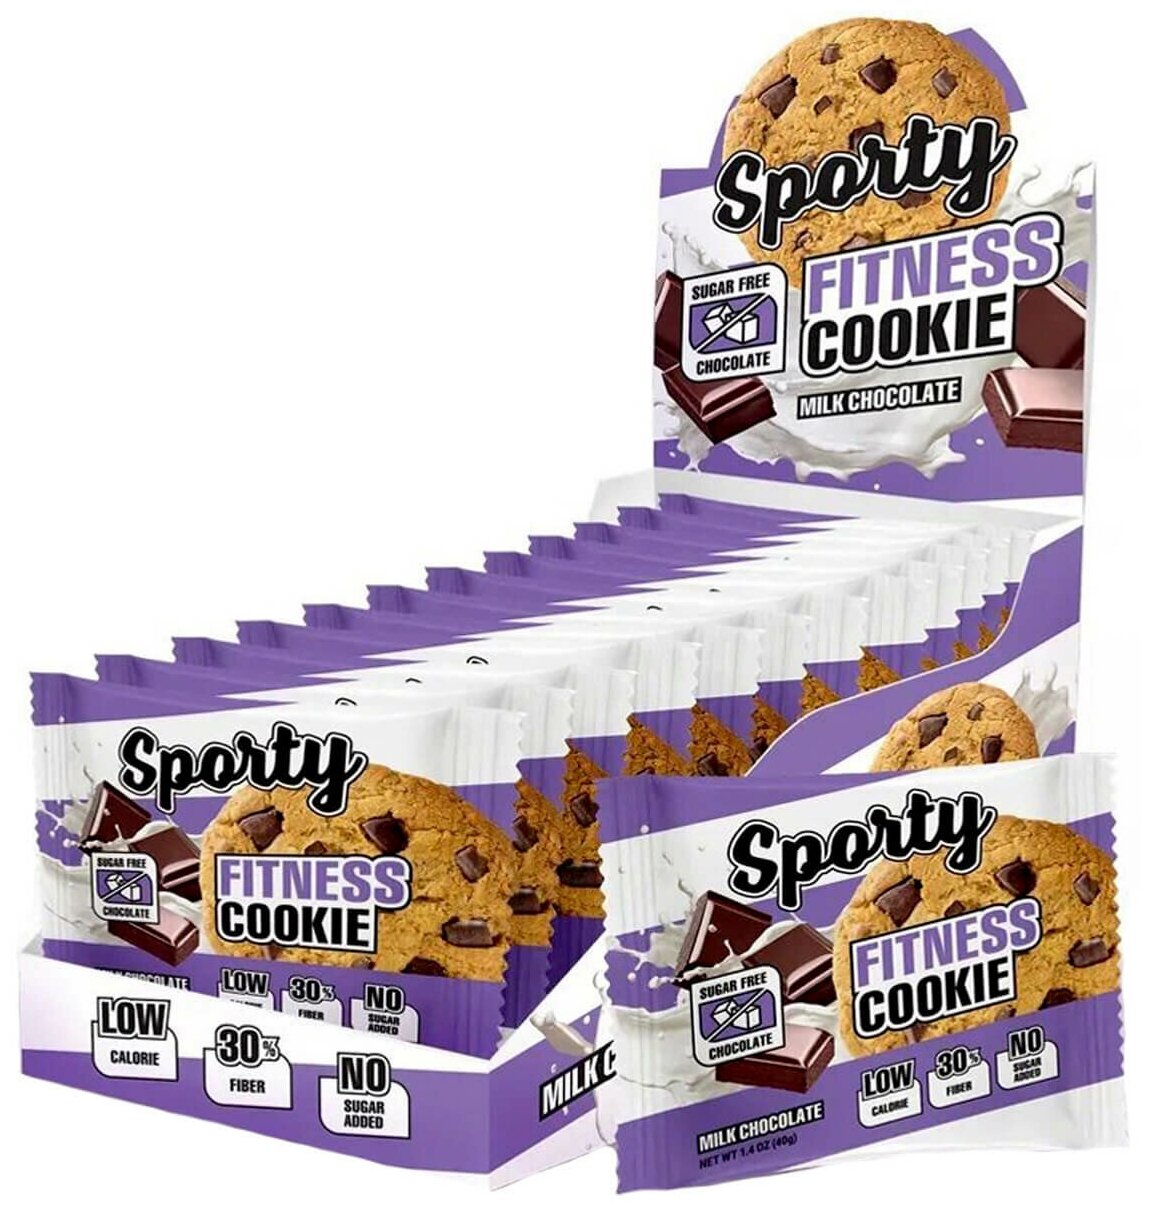 Sporty Fitness cookie Протеиновое печенье 12шт по 40г (Молочный шоколад) / Низкокалорийное фитнес печенье без сахара